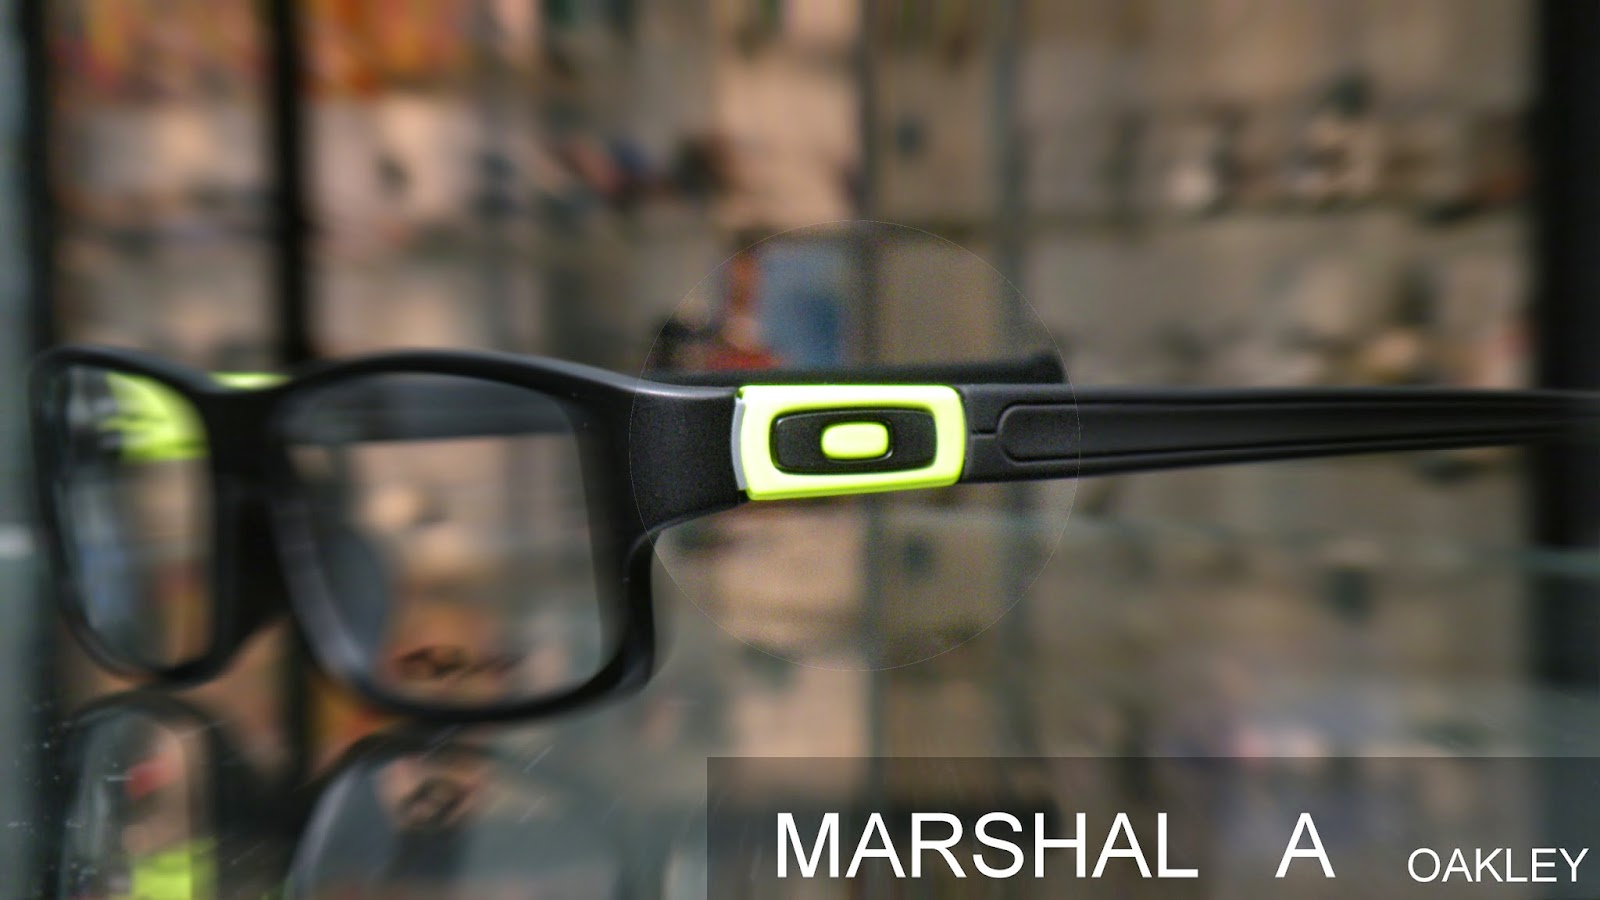 Oakley Marshal A 眼鏡架亞洲版特定設計